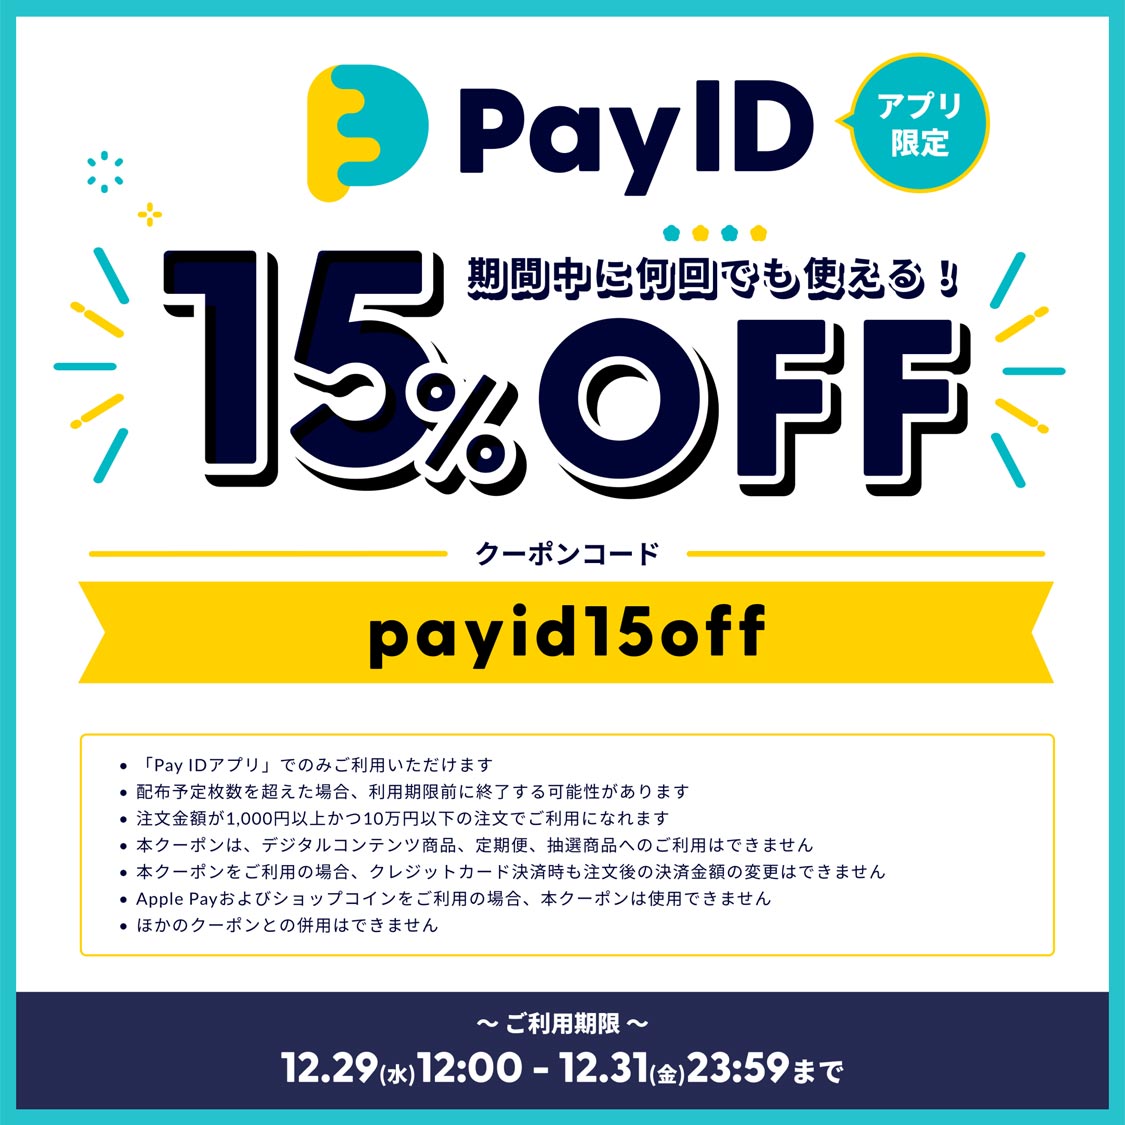 Pay IDリニューアルキャンペーンキャンペーン お得な15%OFFクーポンプレゼント!!